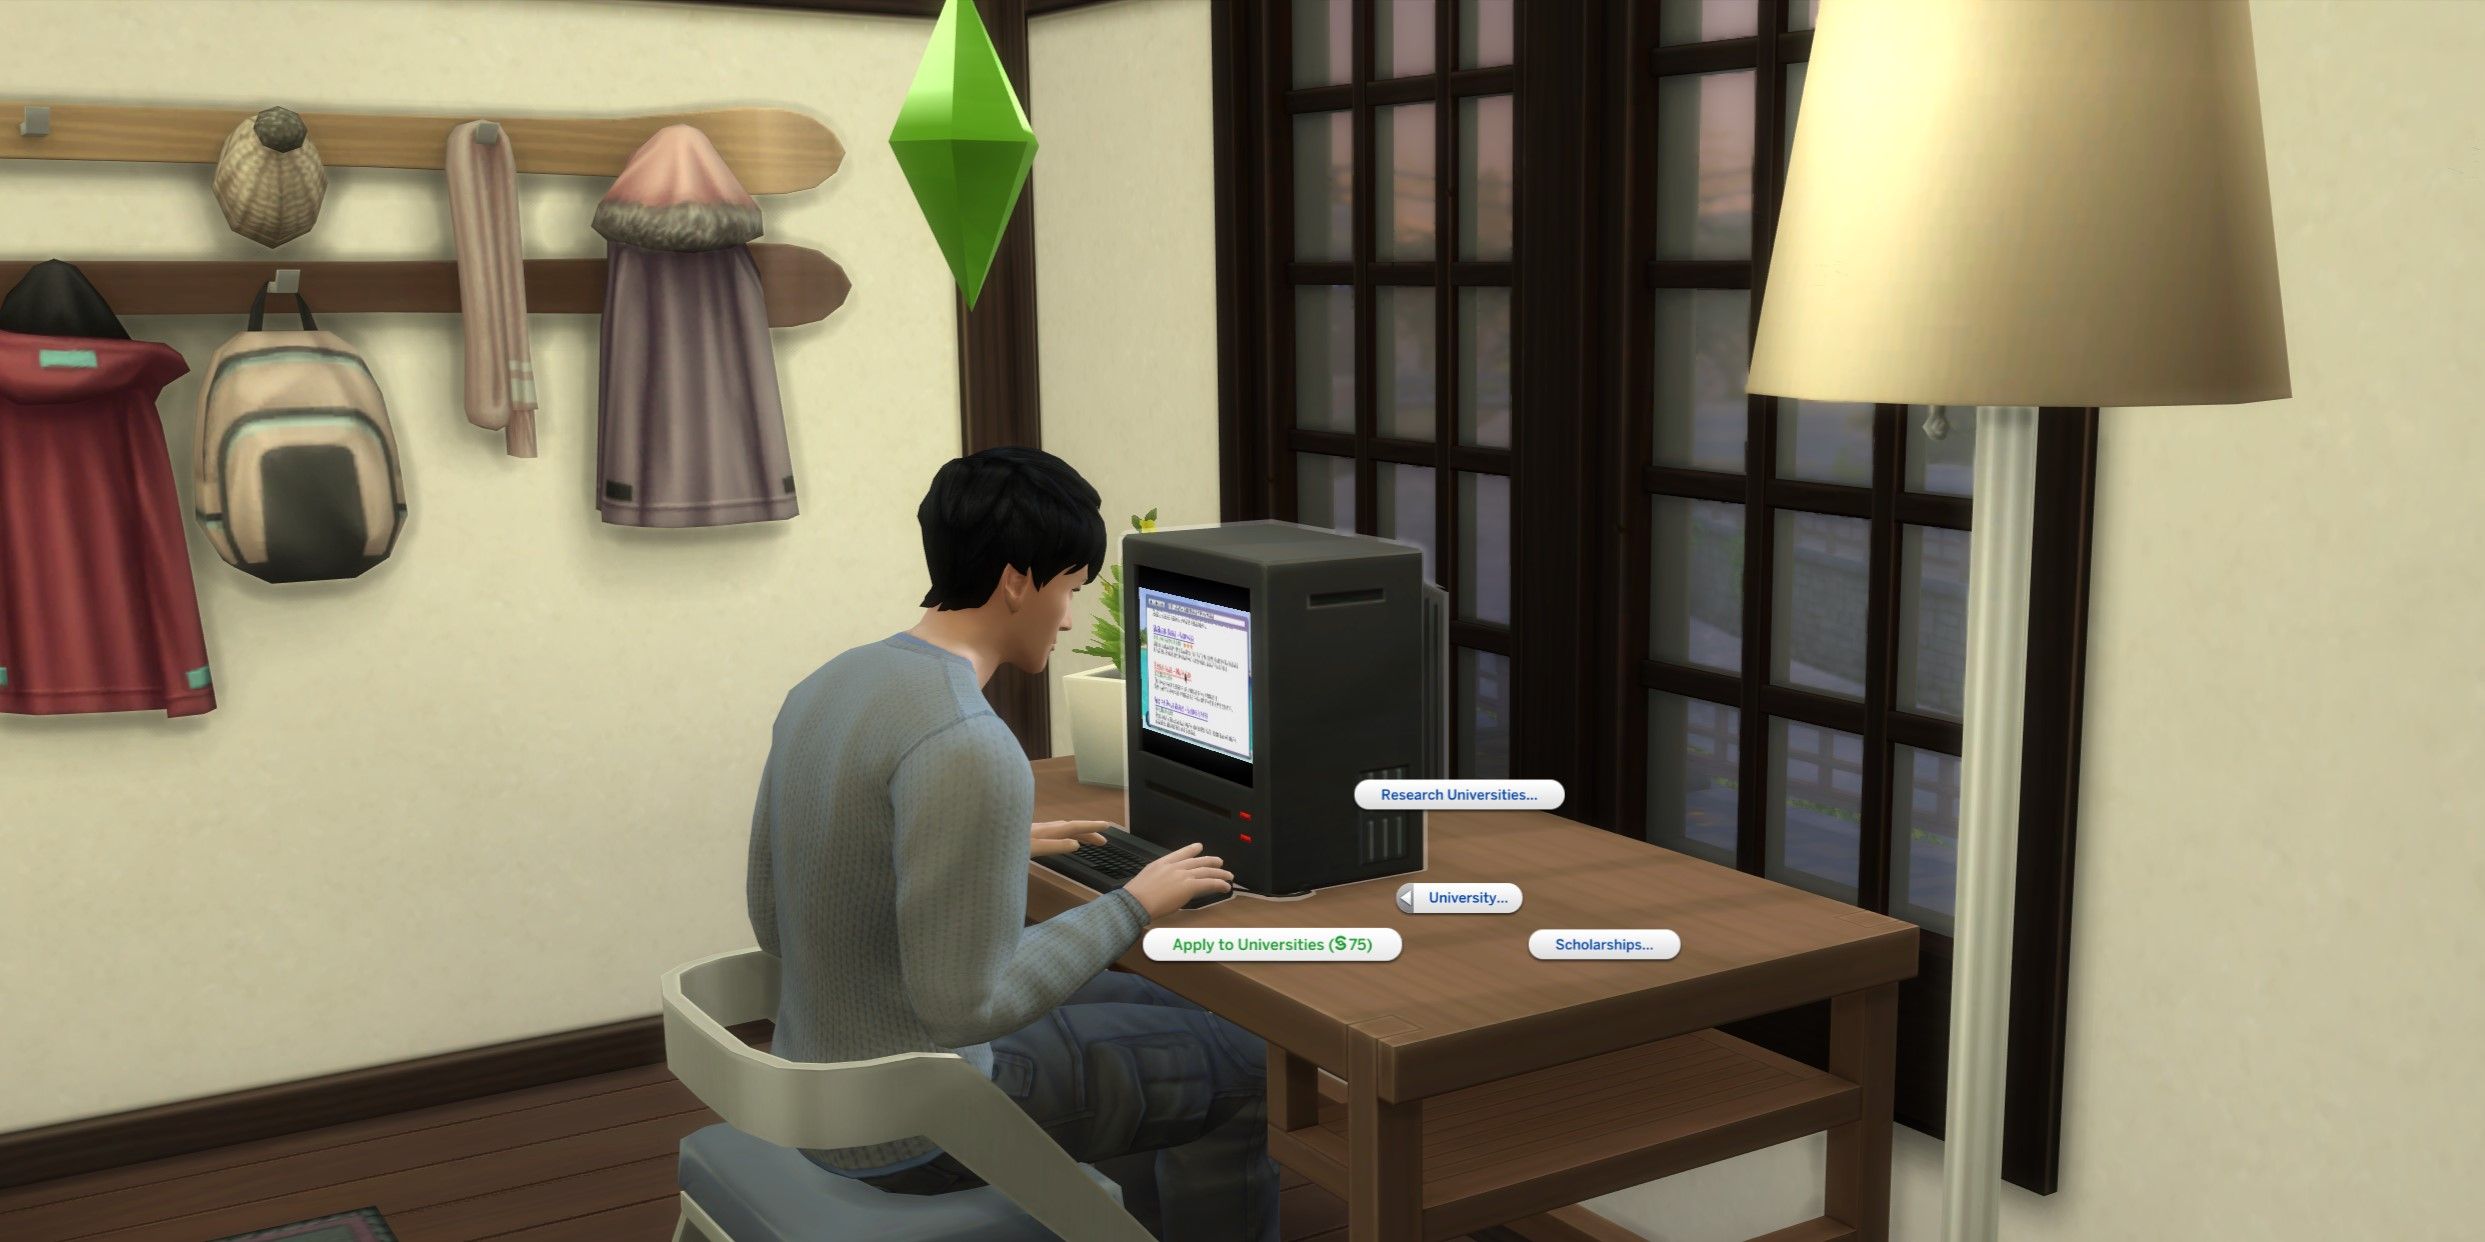 The Sims 4：大学に応募するSim